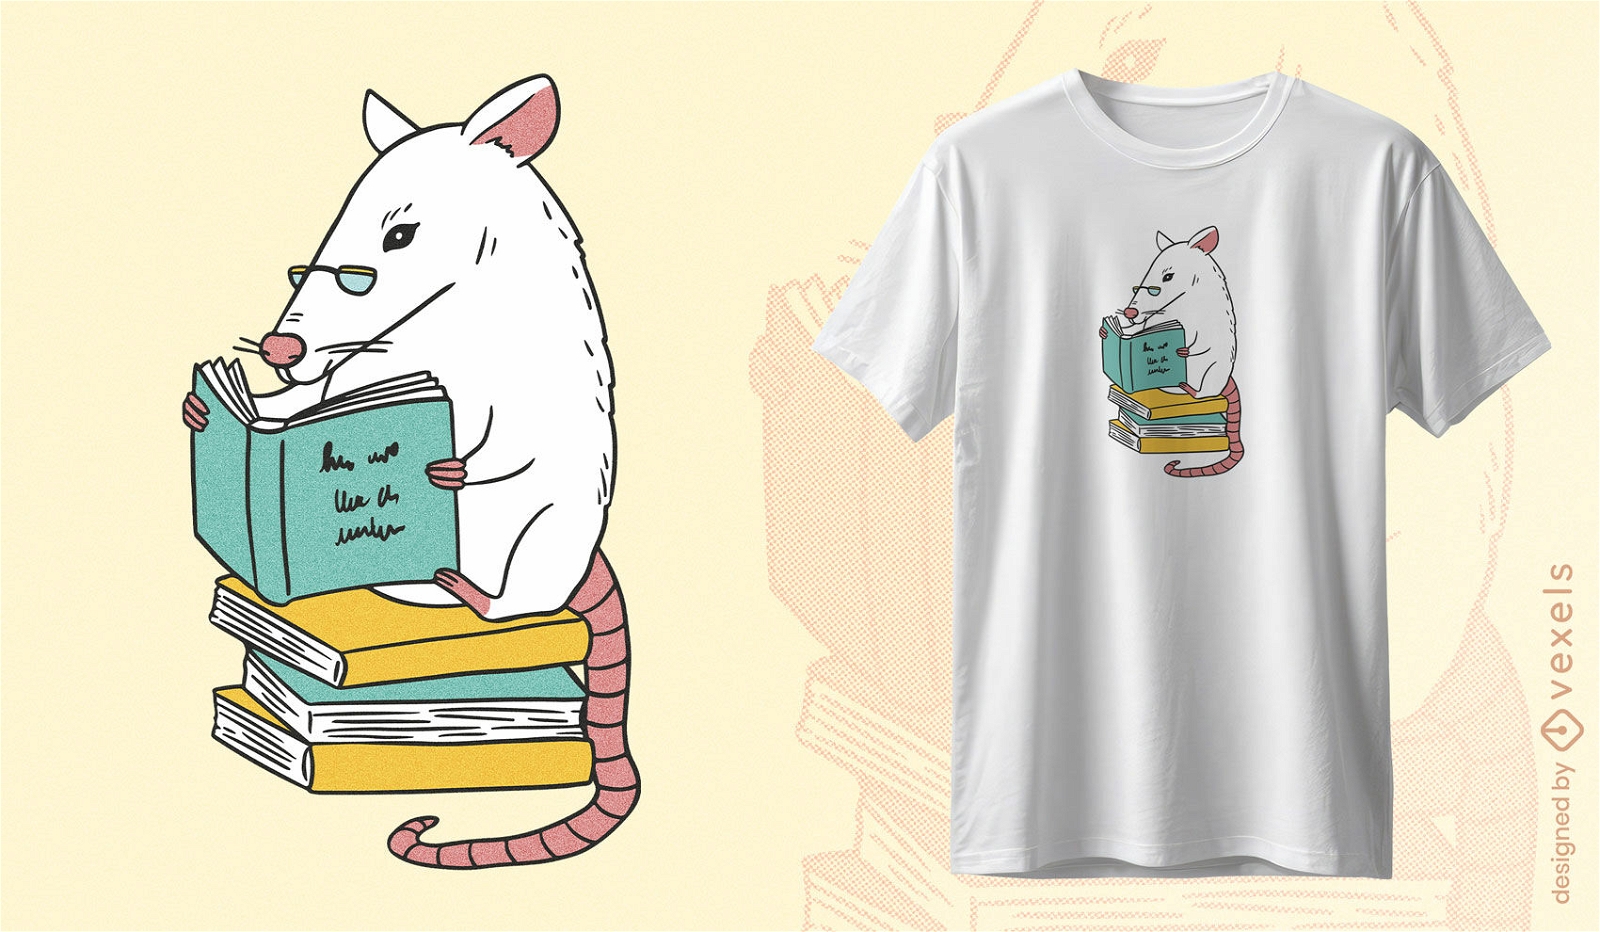 Dise?o de camiseta de rata amante de los libros.